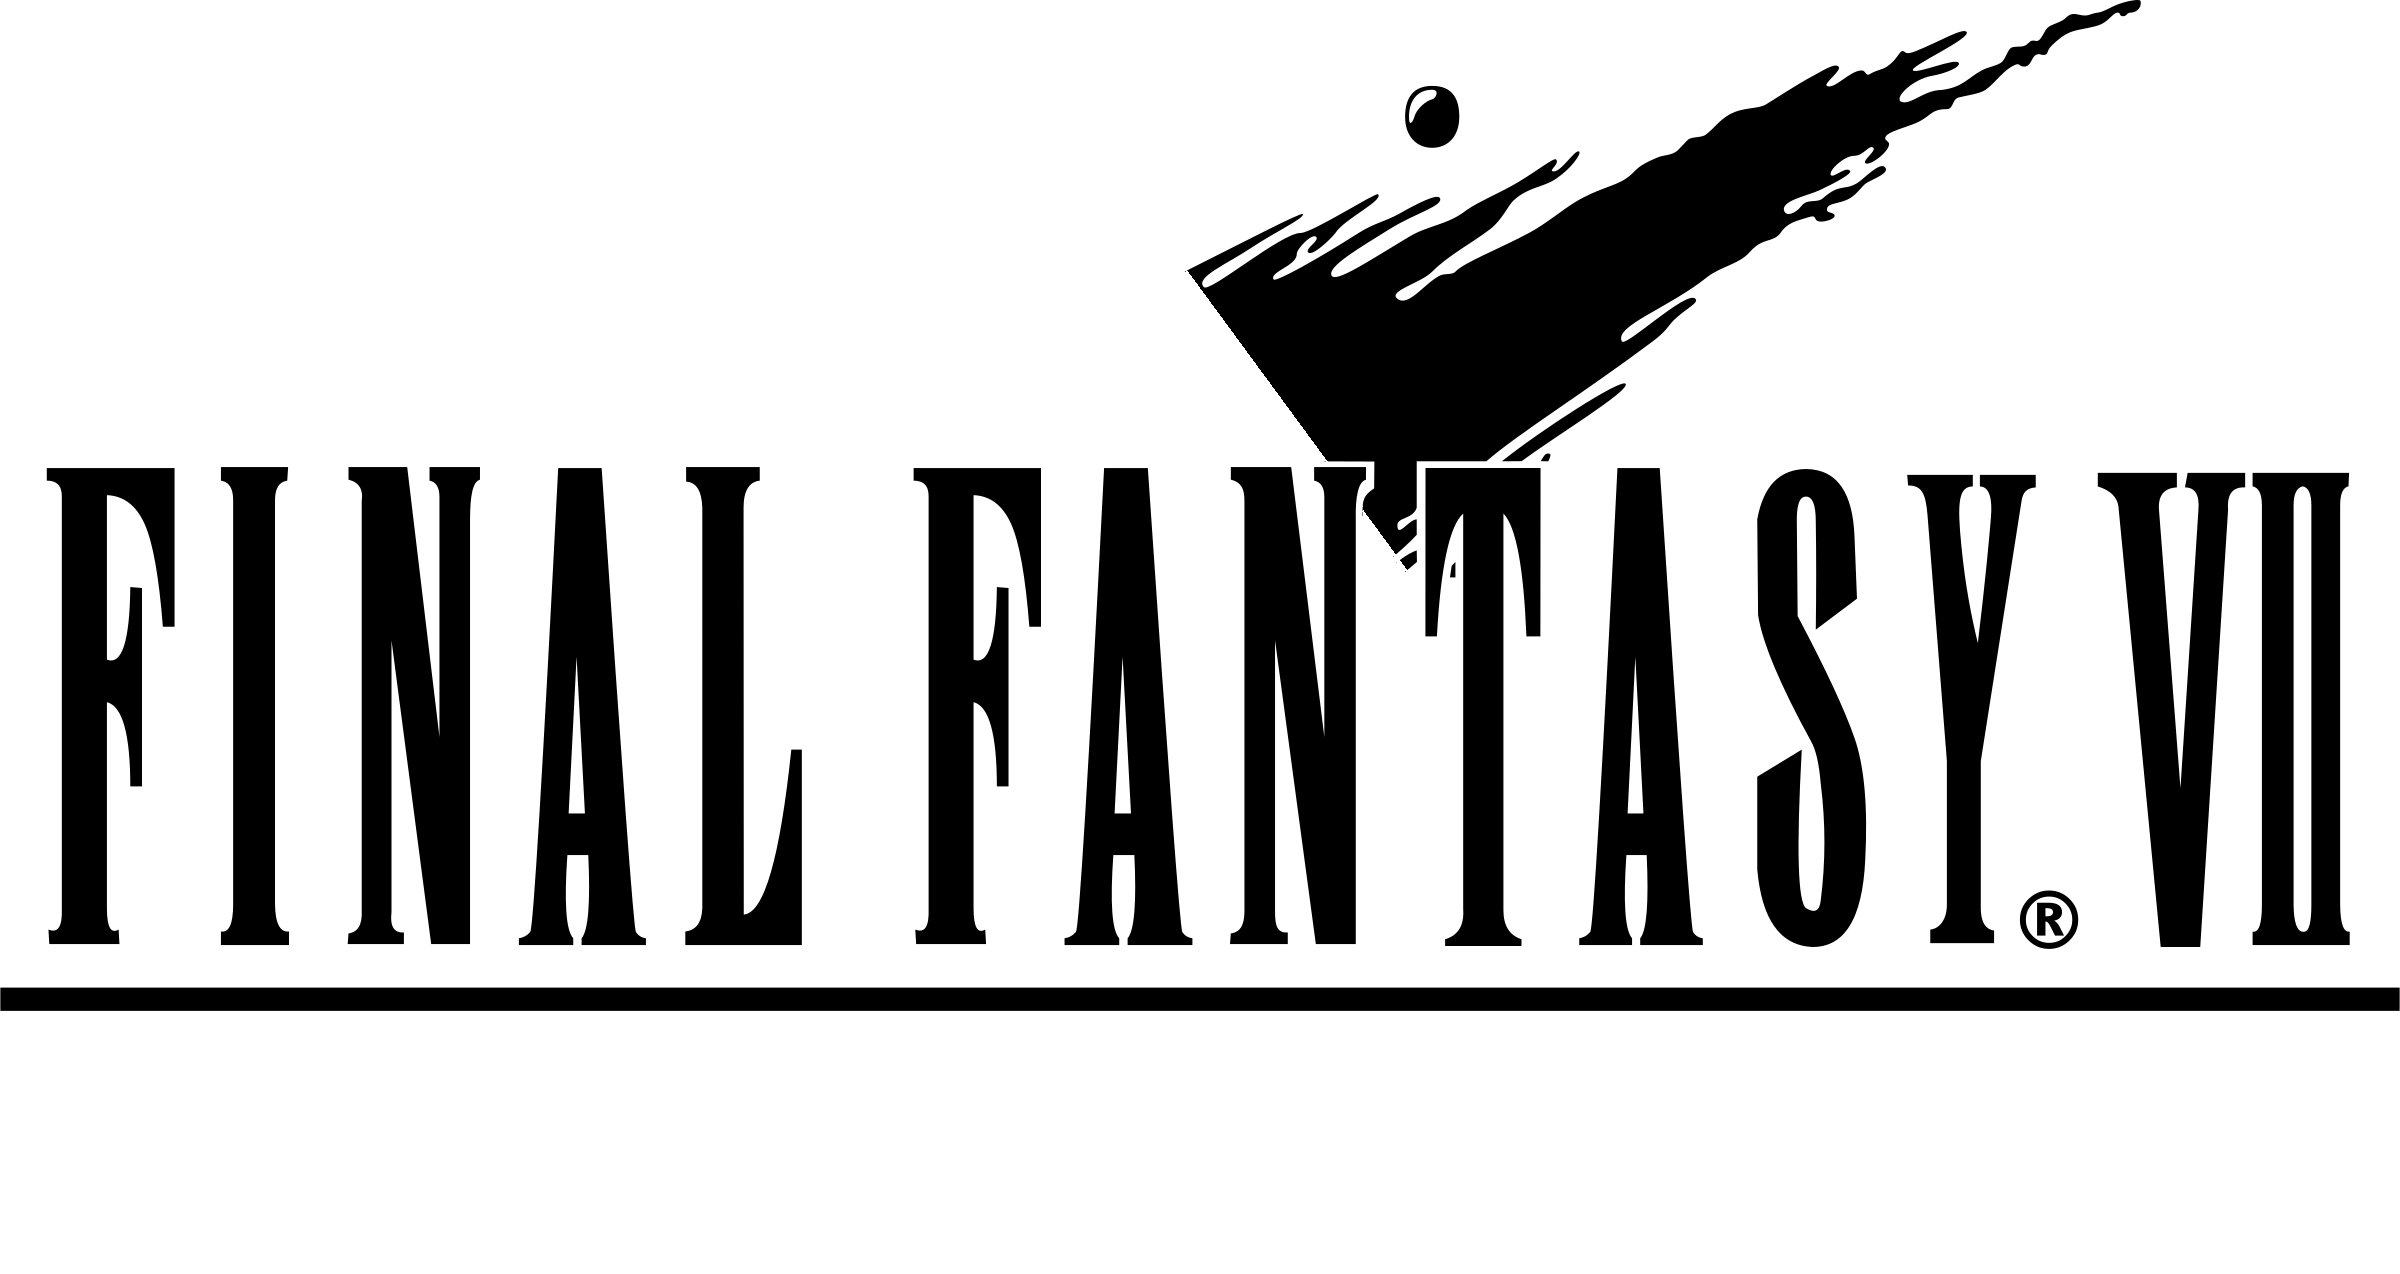 Final Fantasy VII Logo Background PNG Clip Art